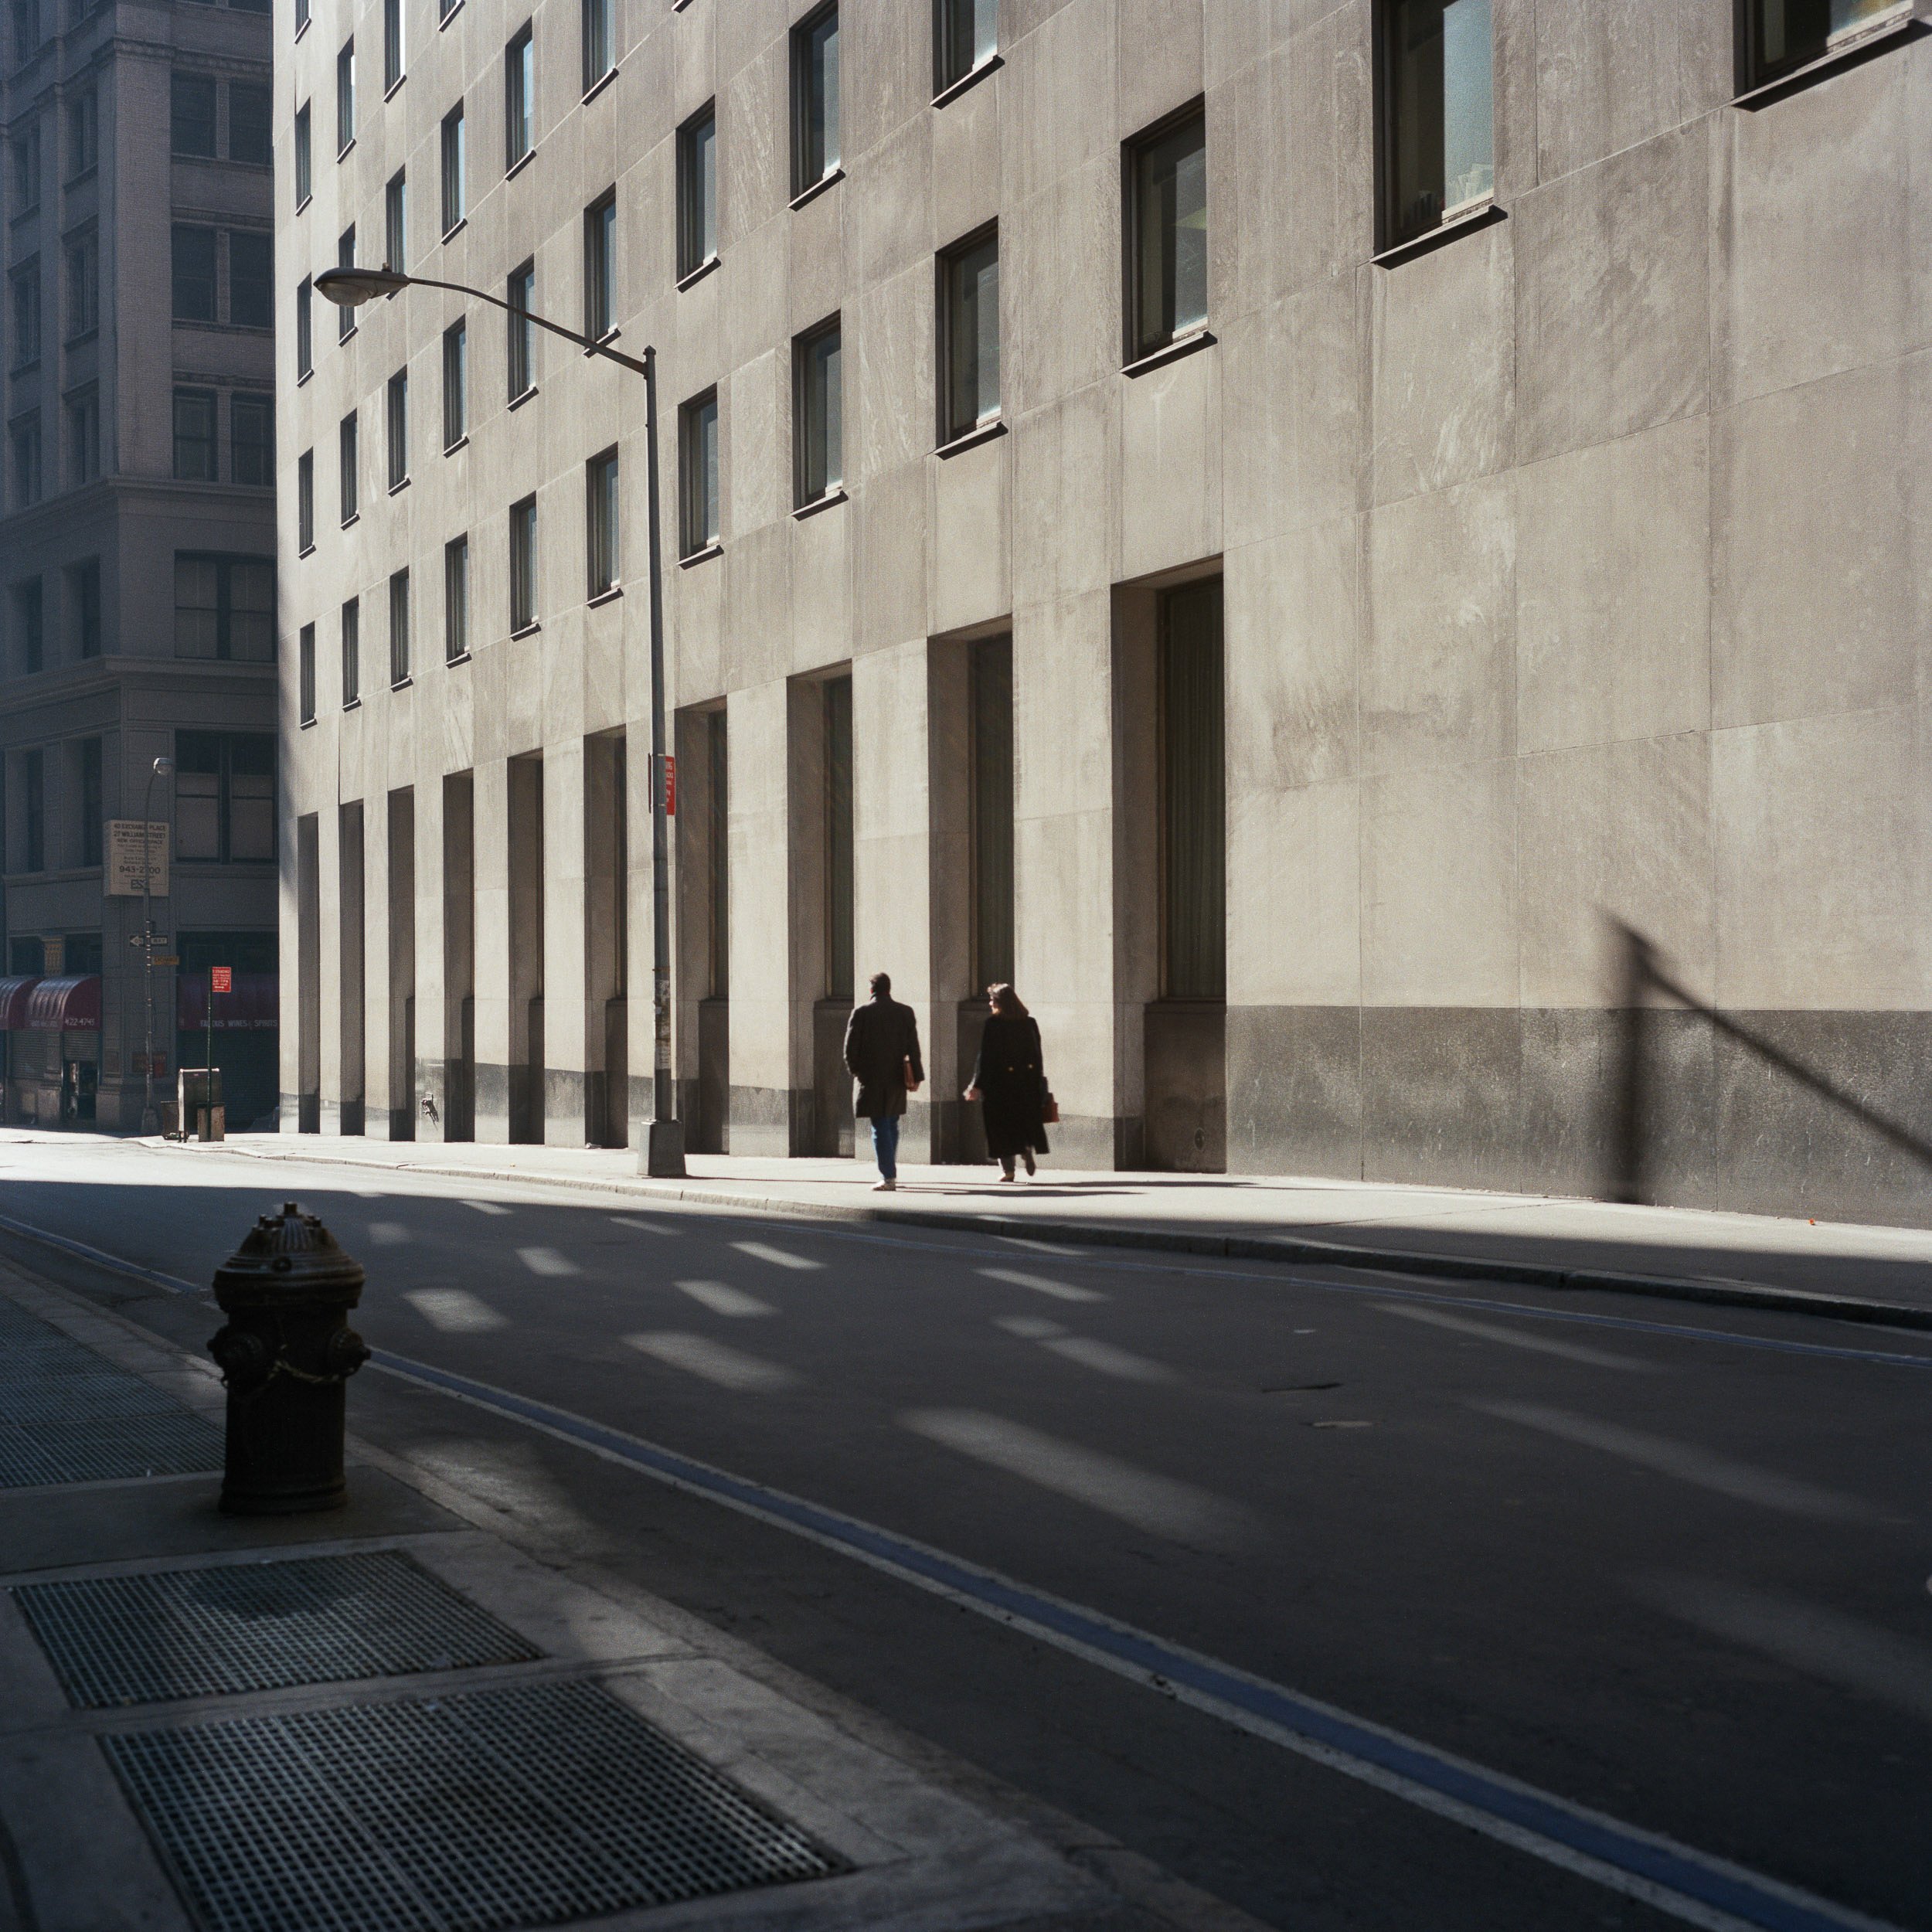   Wall Street, 1984  